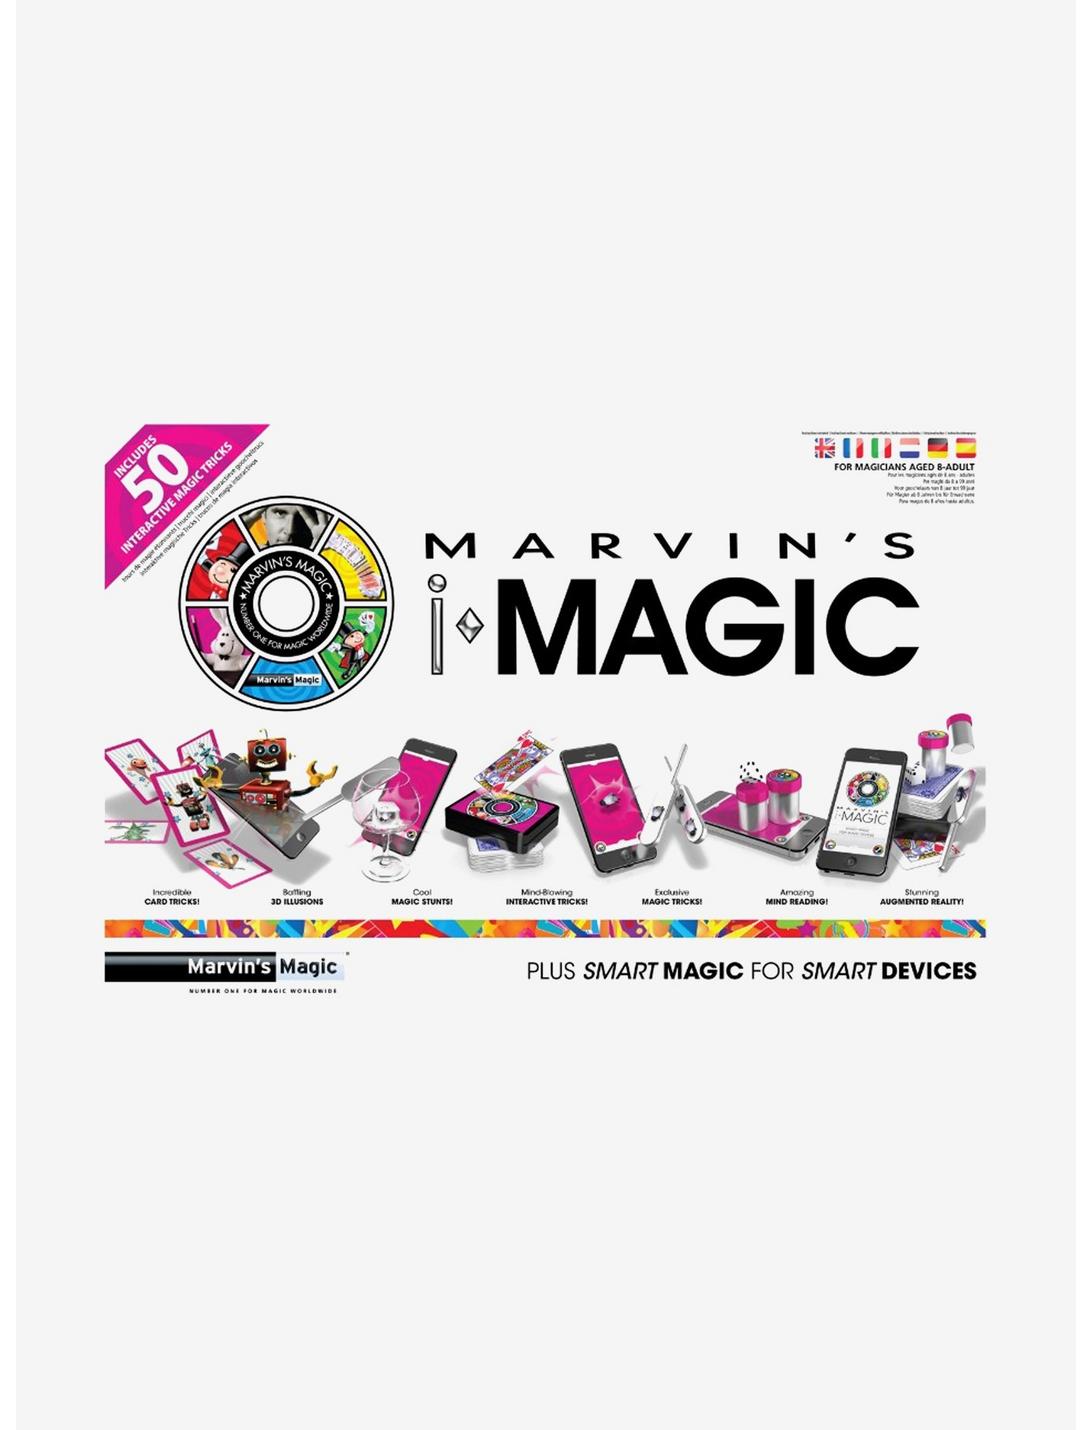 Marvin'S Magic Imagic 50 Interactive Magic Tricks, , hi-res